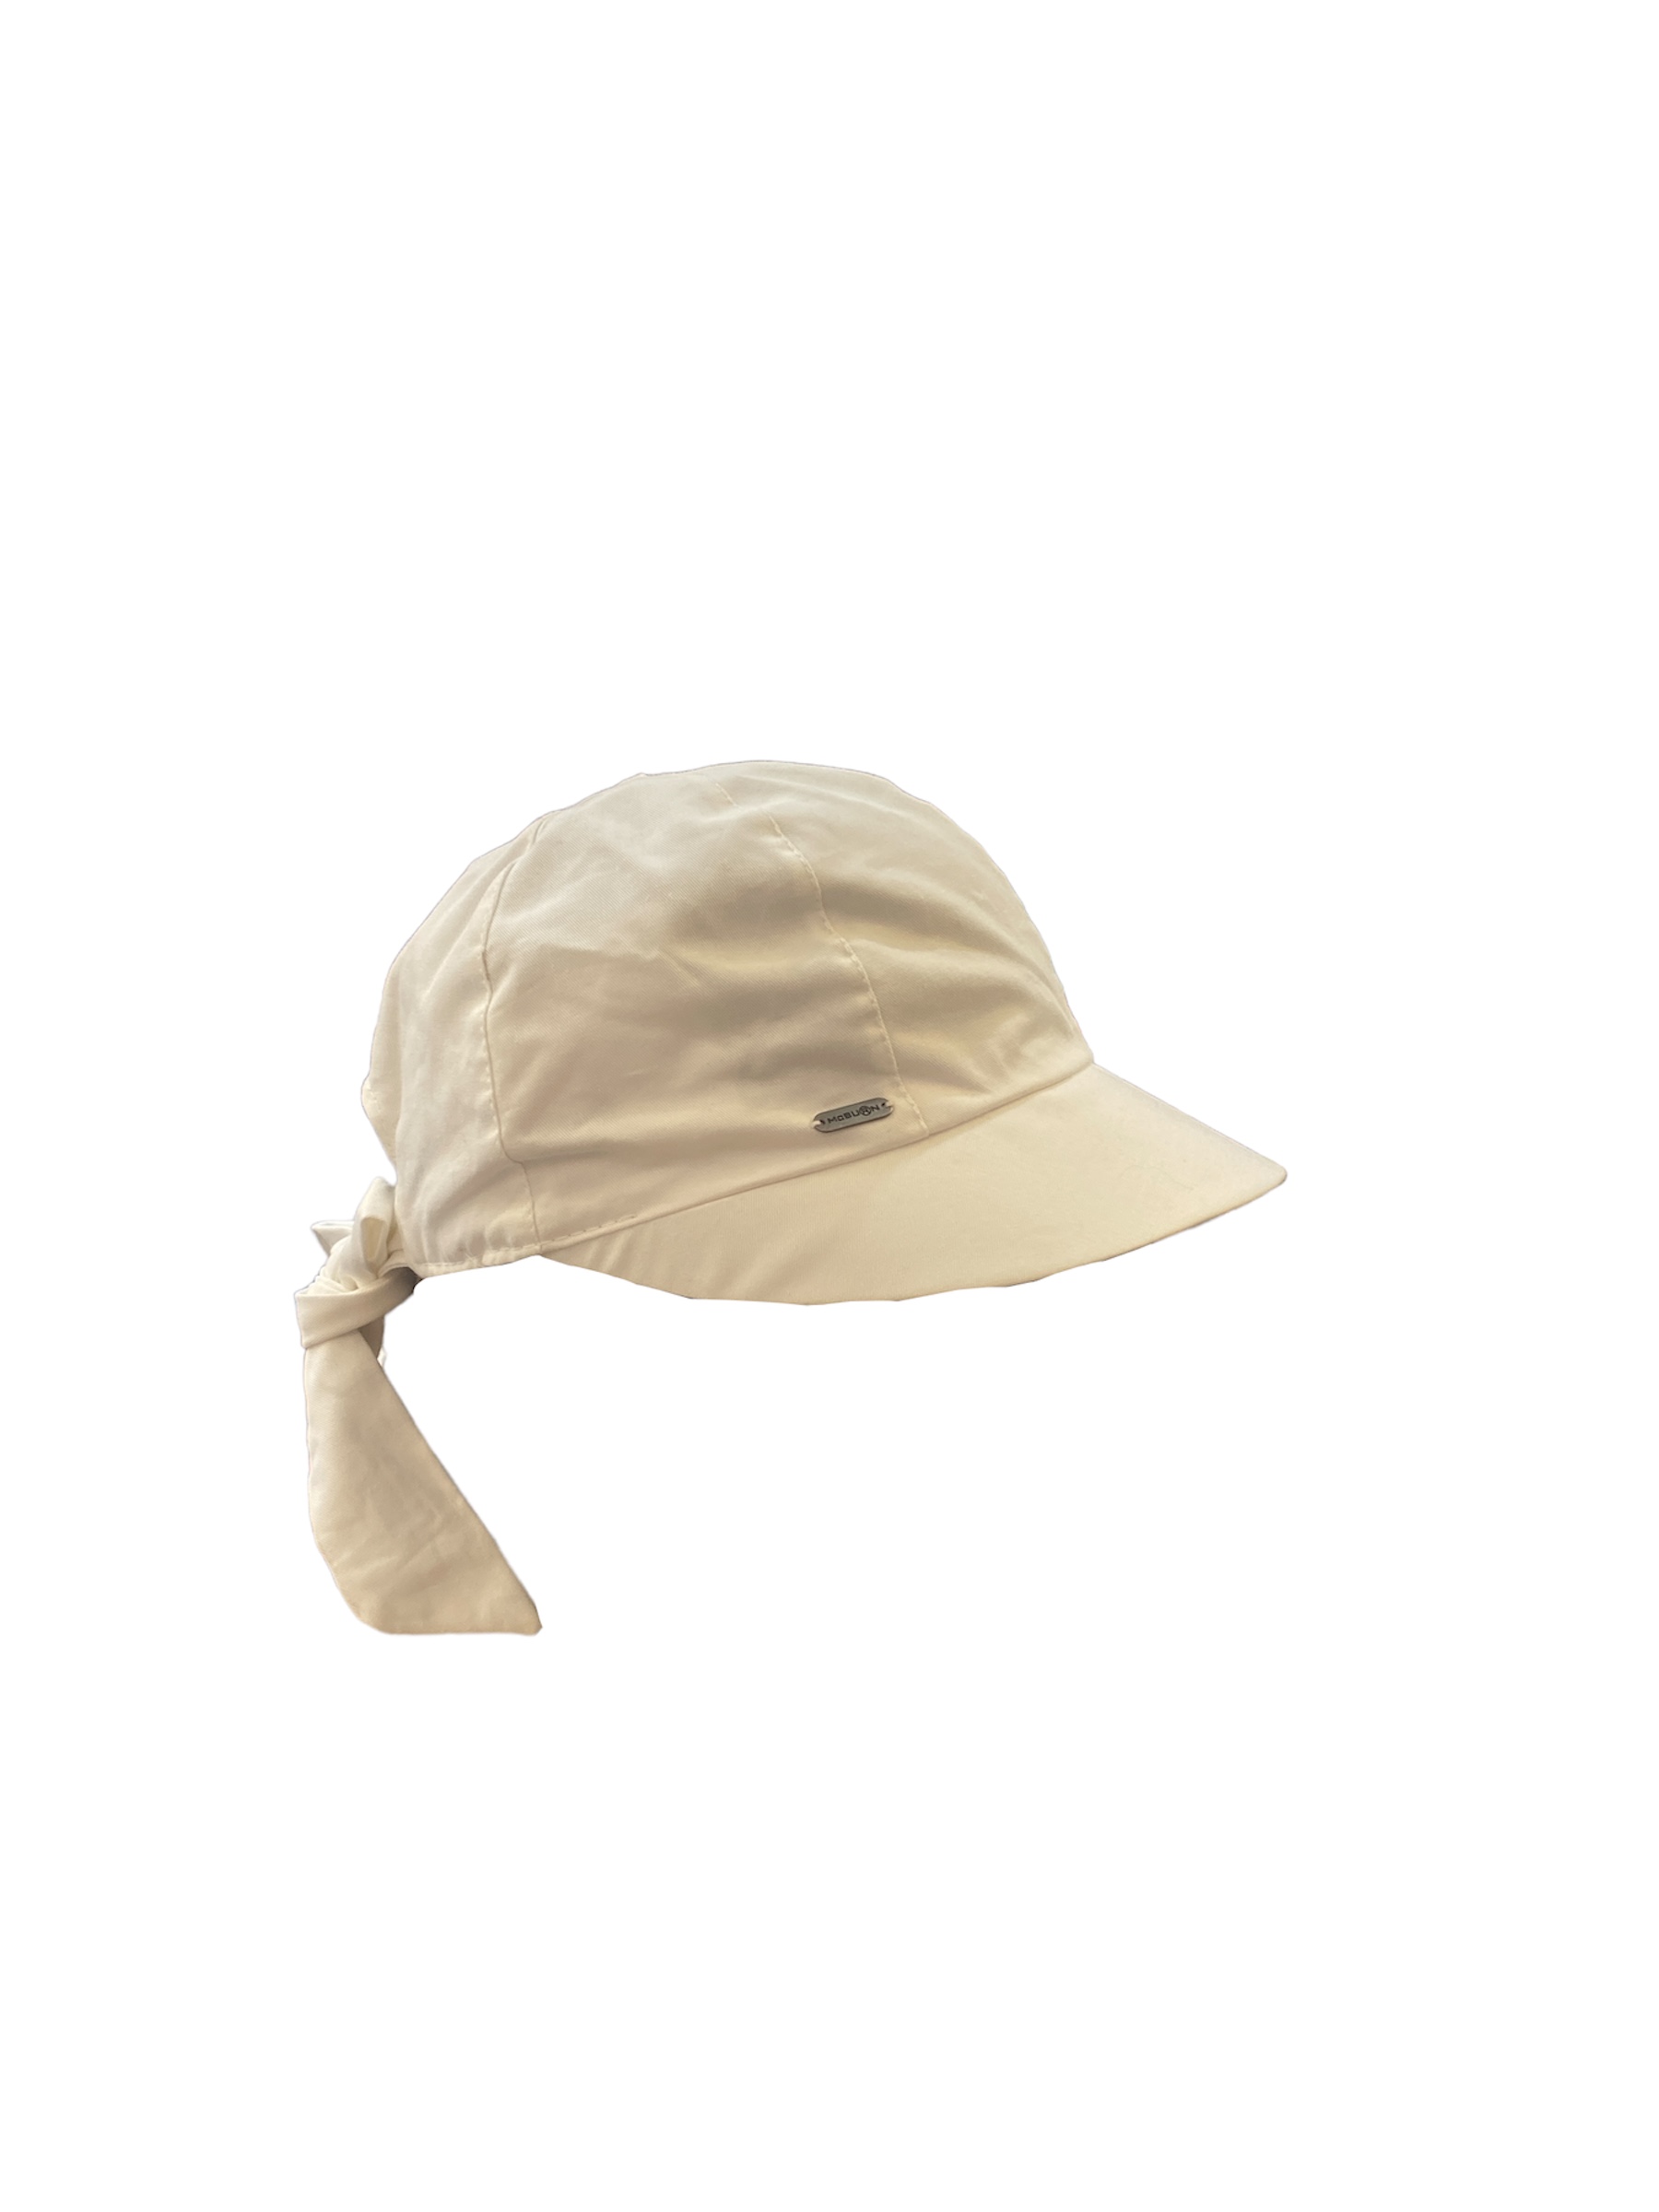 casquette souple Mcburn, blanc, taille unique